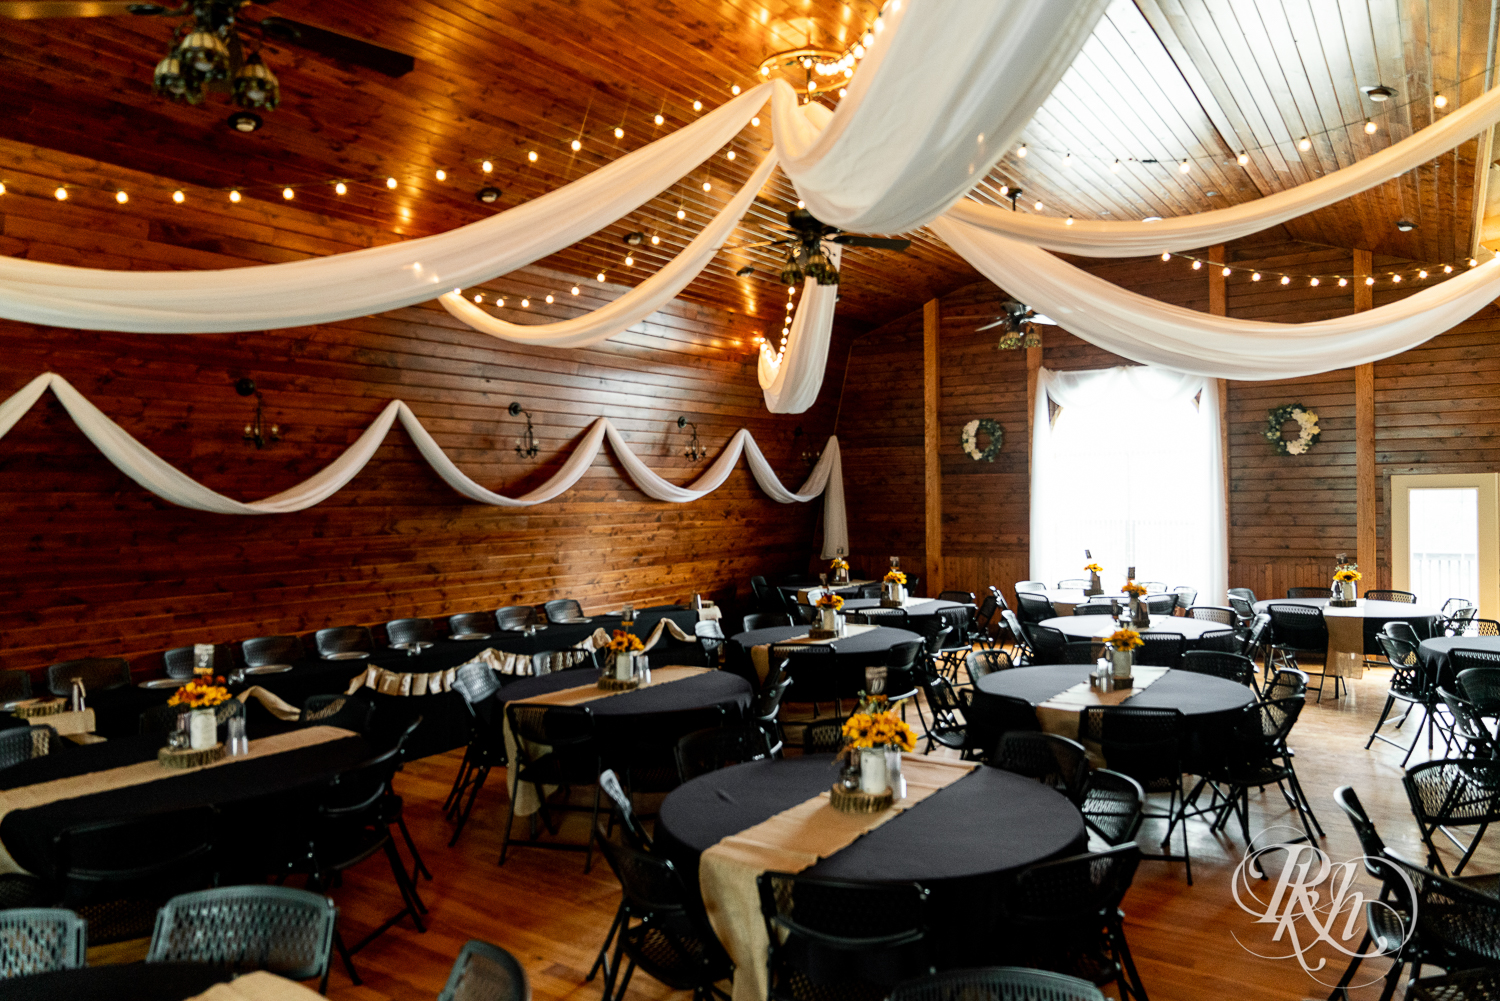 Barn wedding reception setup at Barn at Crocker's Creek in Faribault, Minnesota.